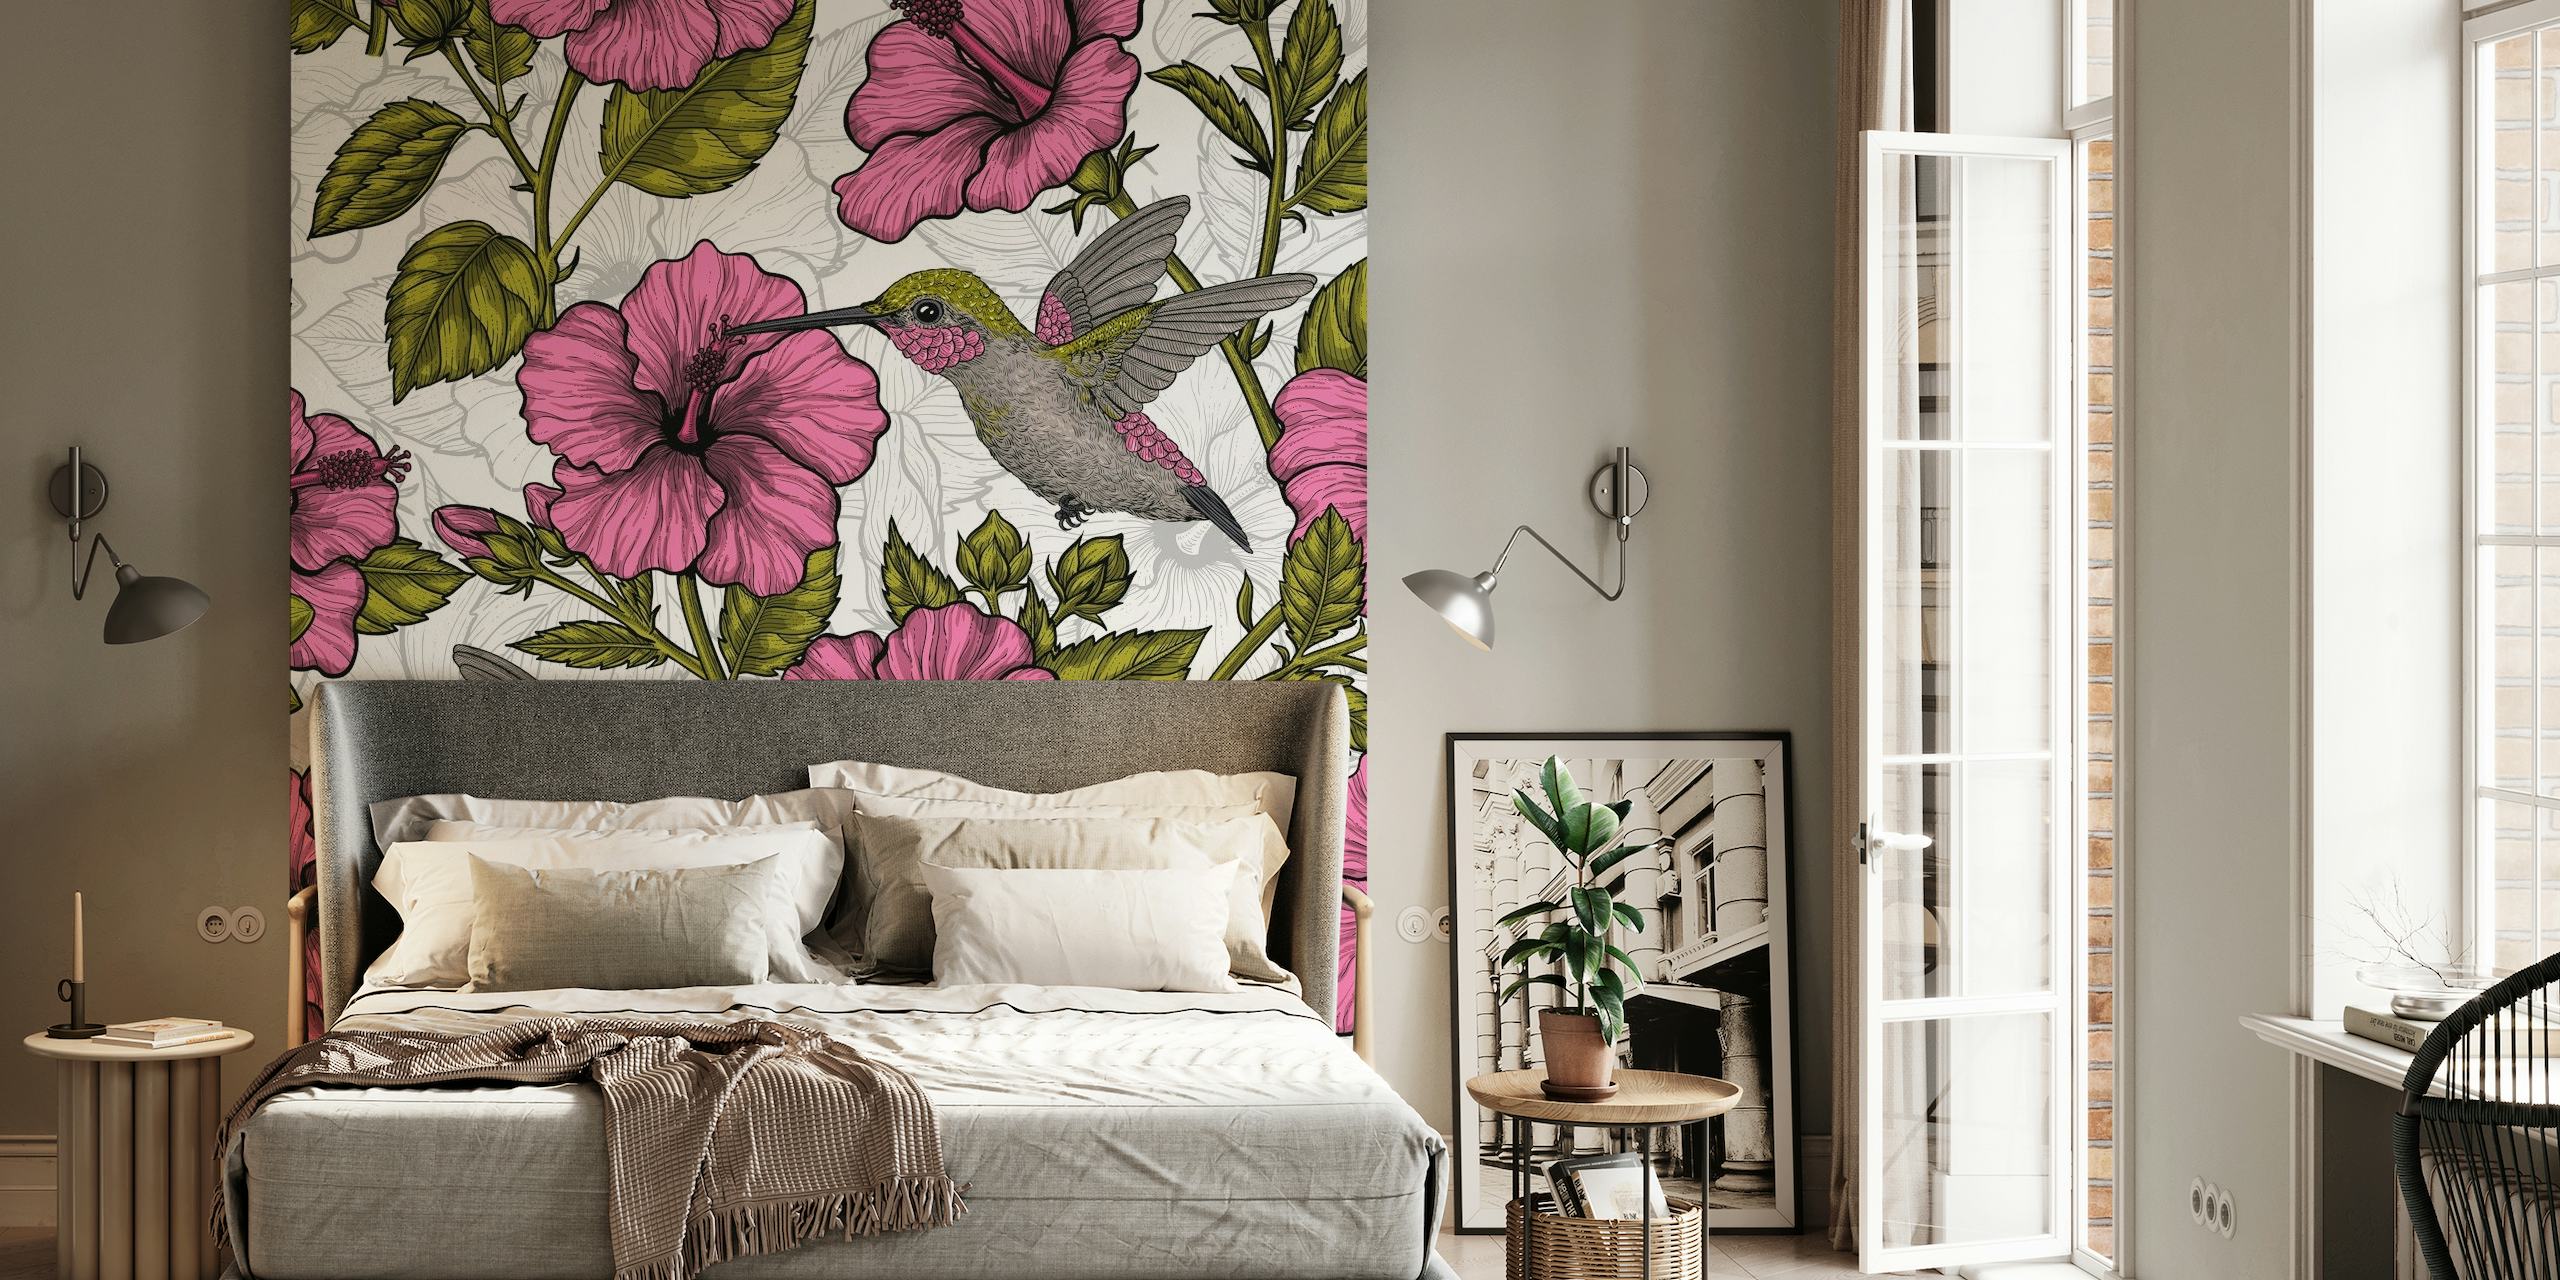 Décoration murale avec fleurs d'hibiscus roses et colibris